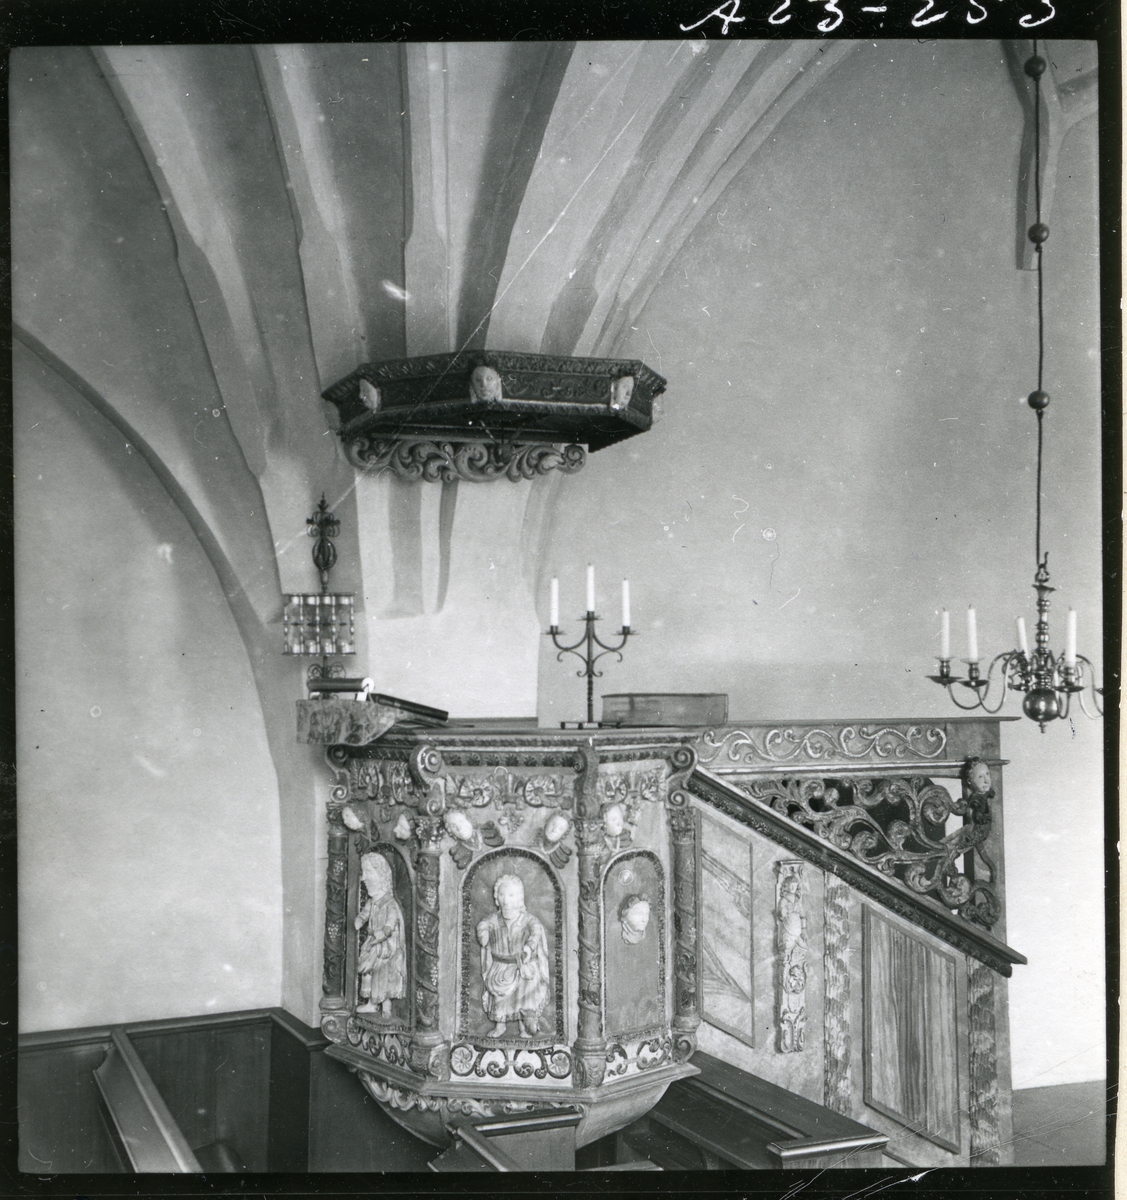 Sättersta sn, Nyköpings kn, Sättersta kyrka.
Interiör av Sättersta kyrka, predikstolen, 1946-1947.